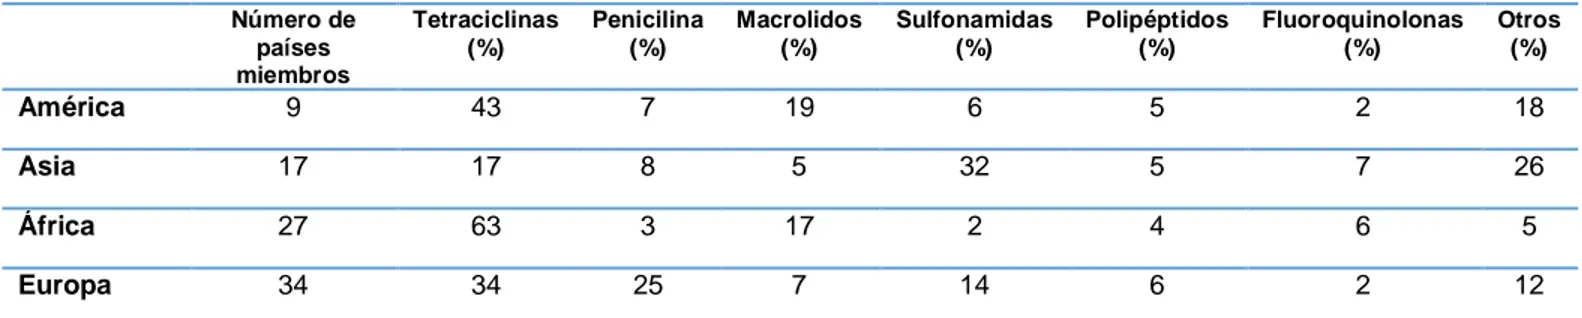 Tabla 1. Agentes antimicrobianos usados en animales por países miembros de la OIE 2010-2015